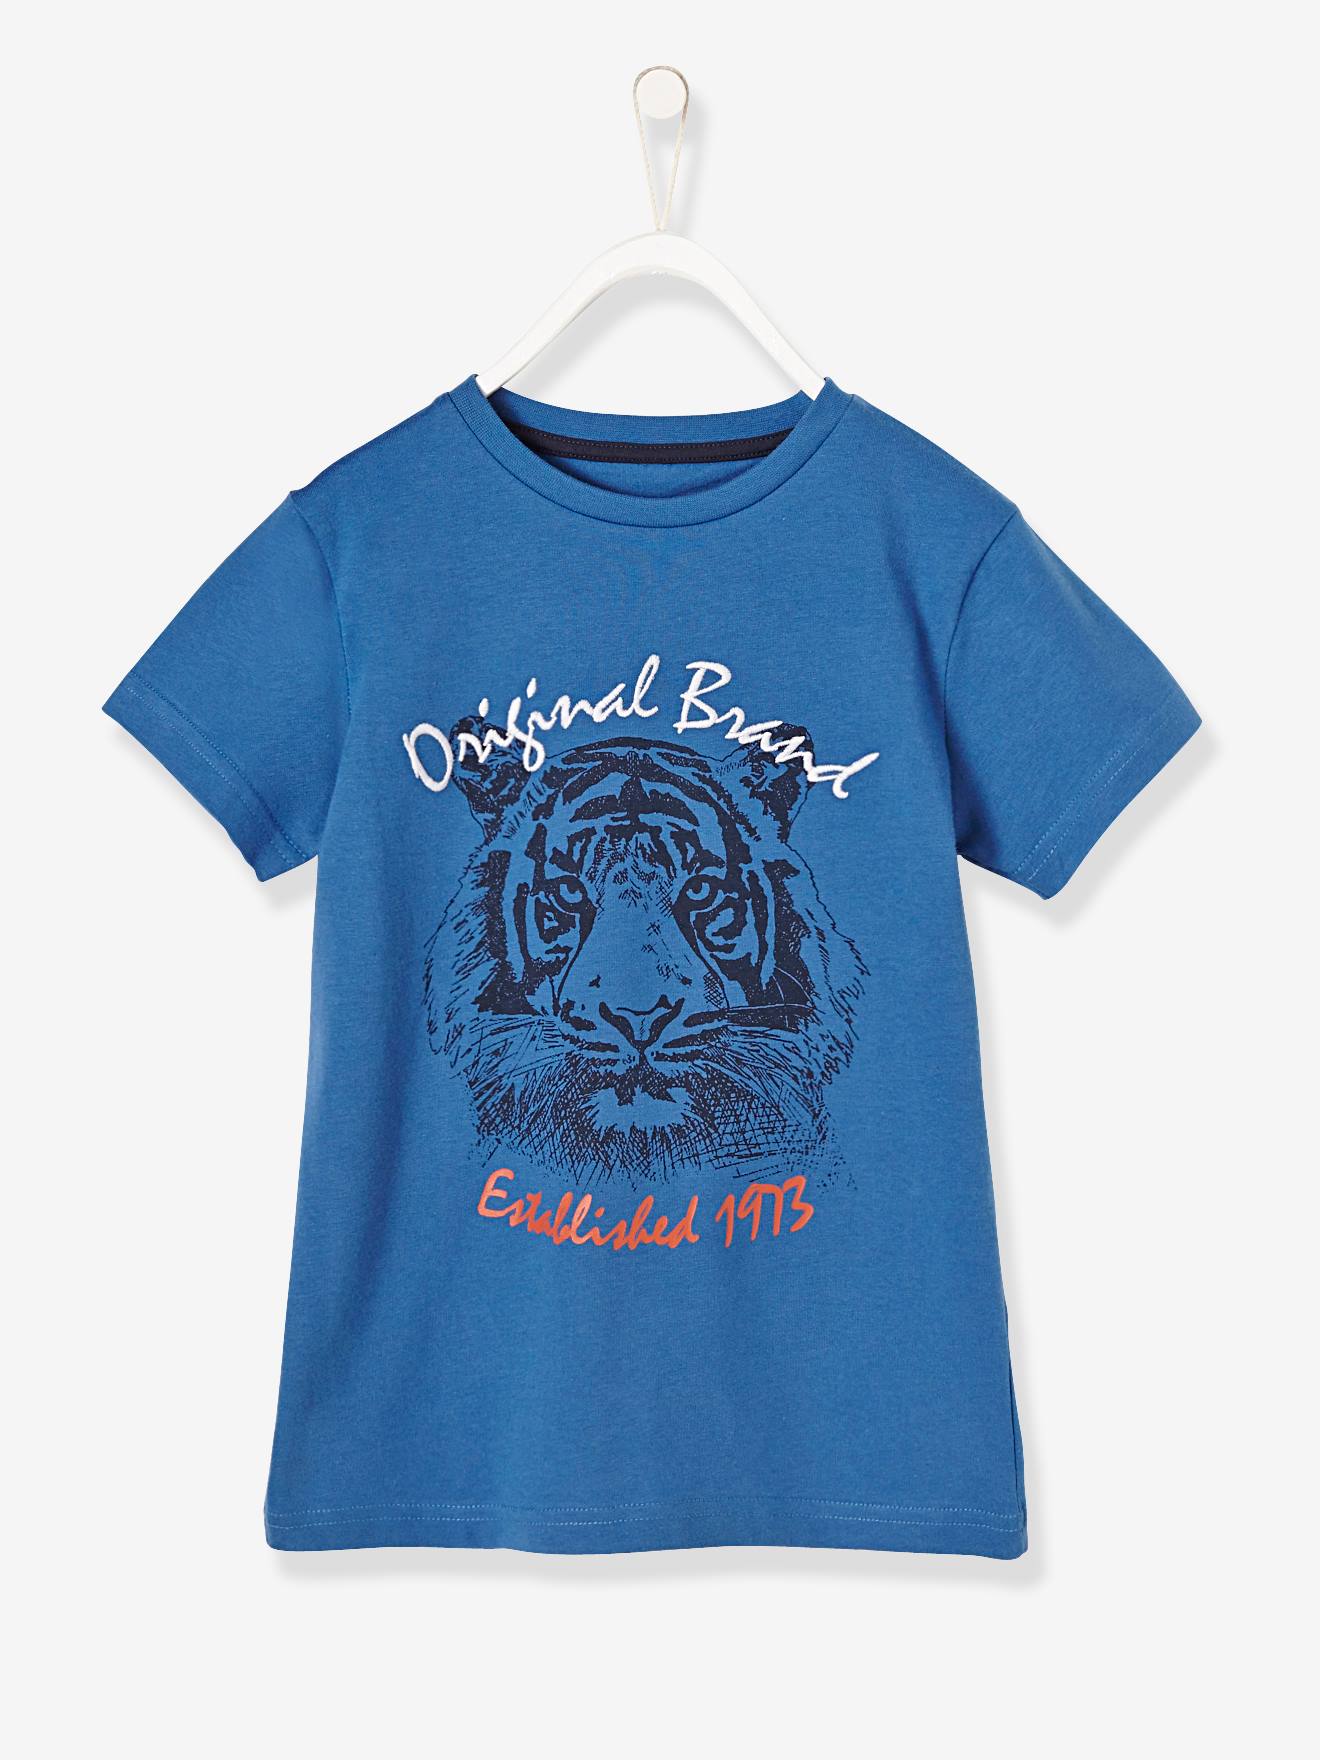 T-shirt garçon motif tigre détails brodés bleu